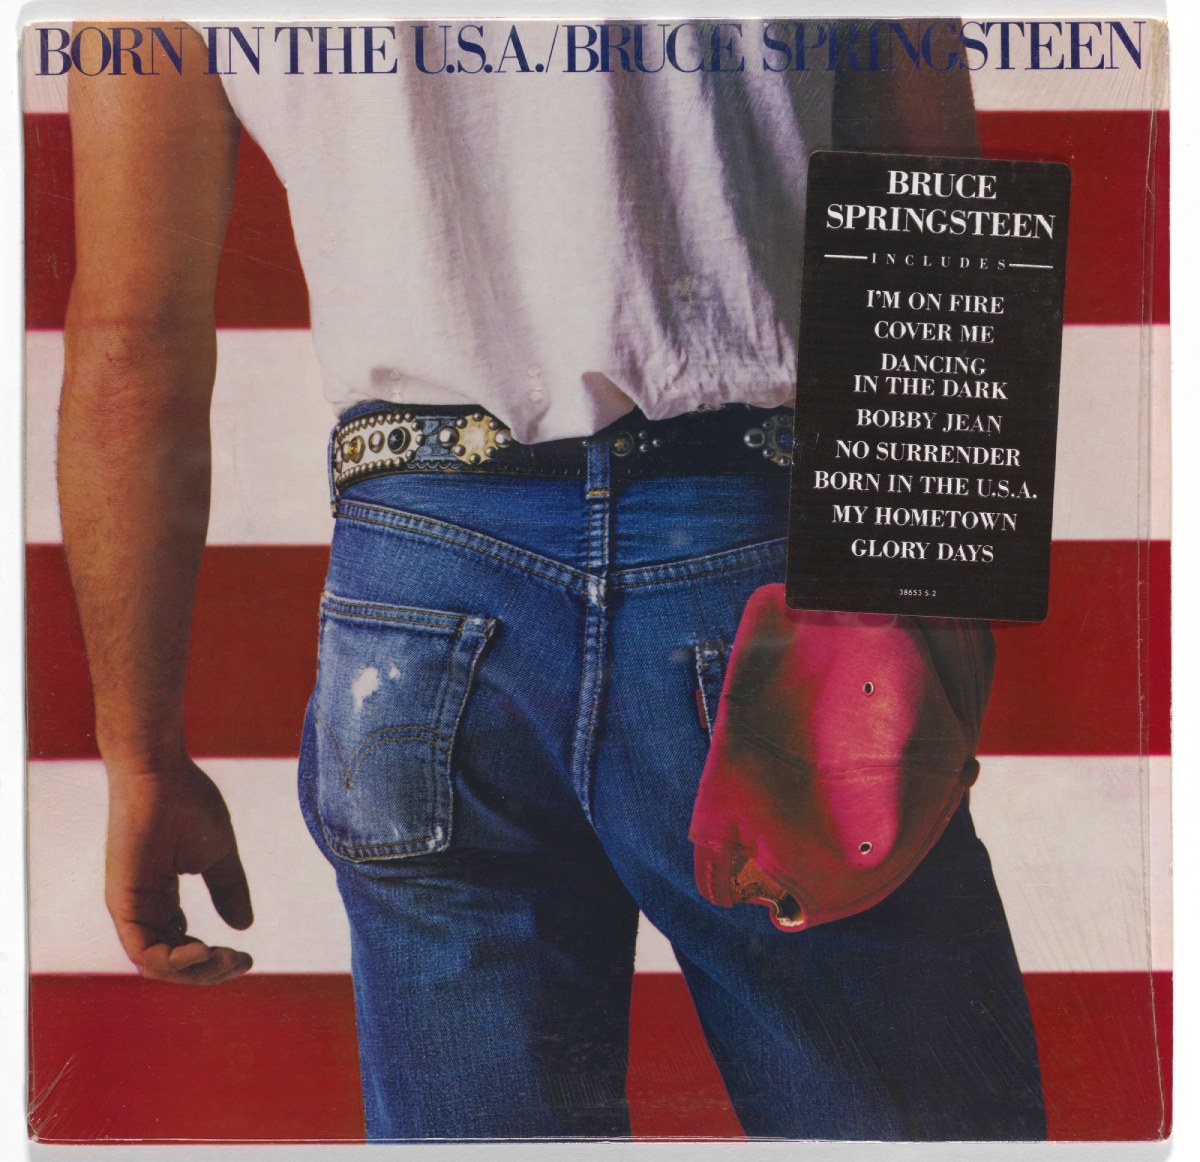 Bruce Springsteen - "Born in the U.S.A." (Né aux États-Unis) (1984)